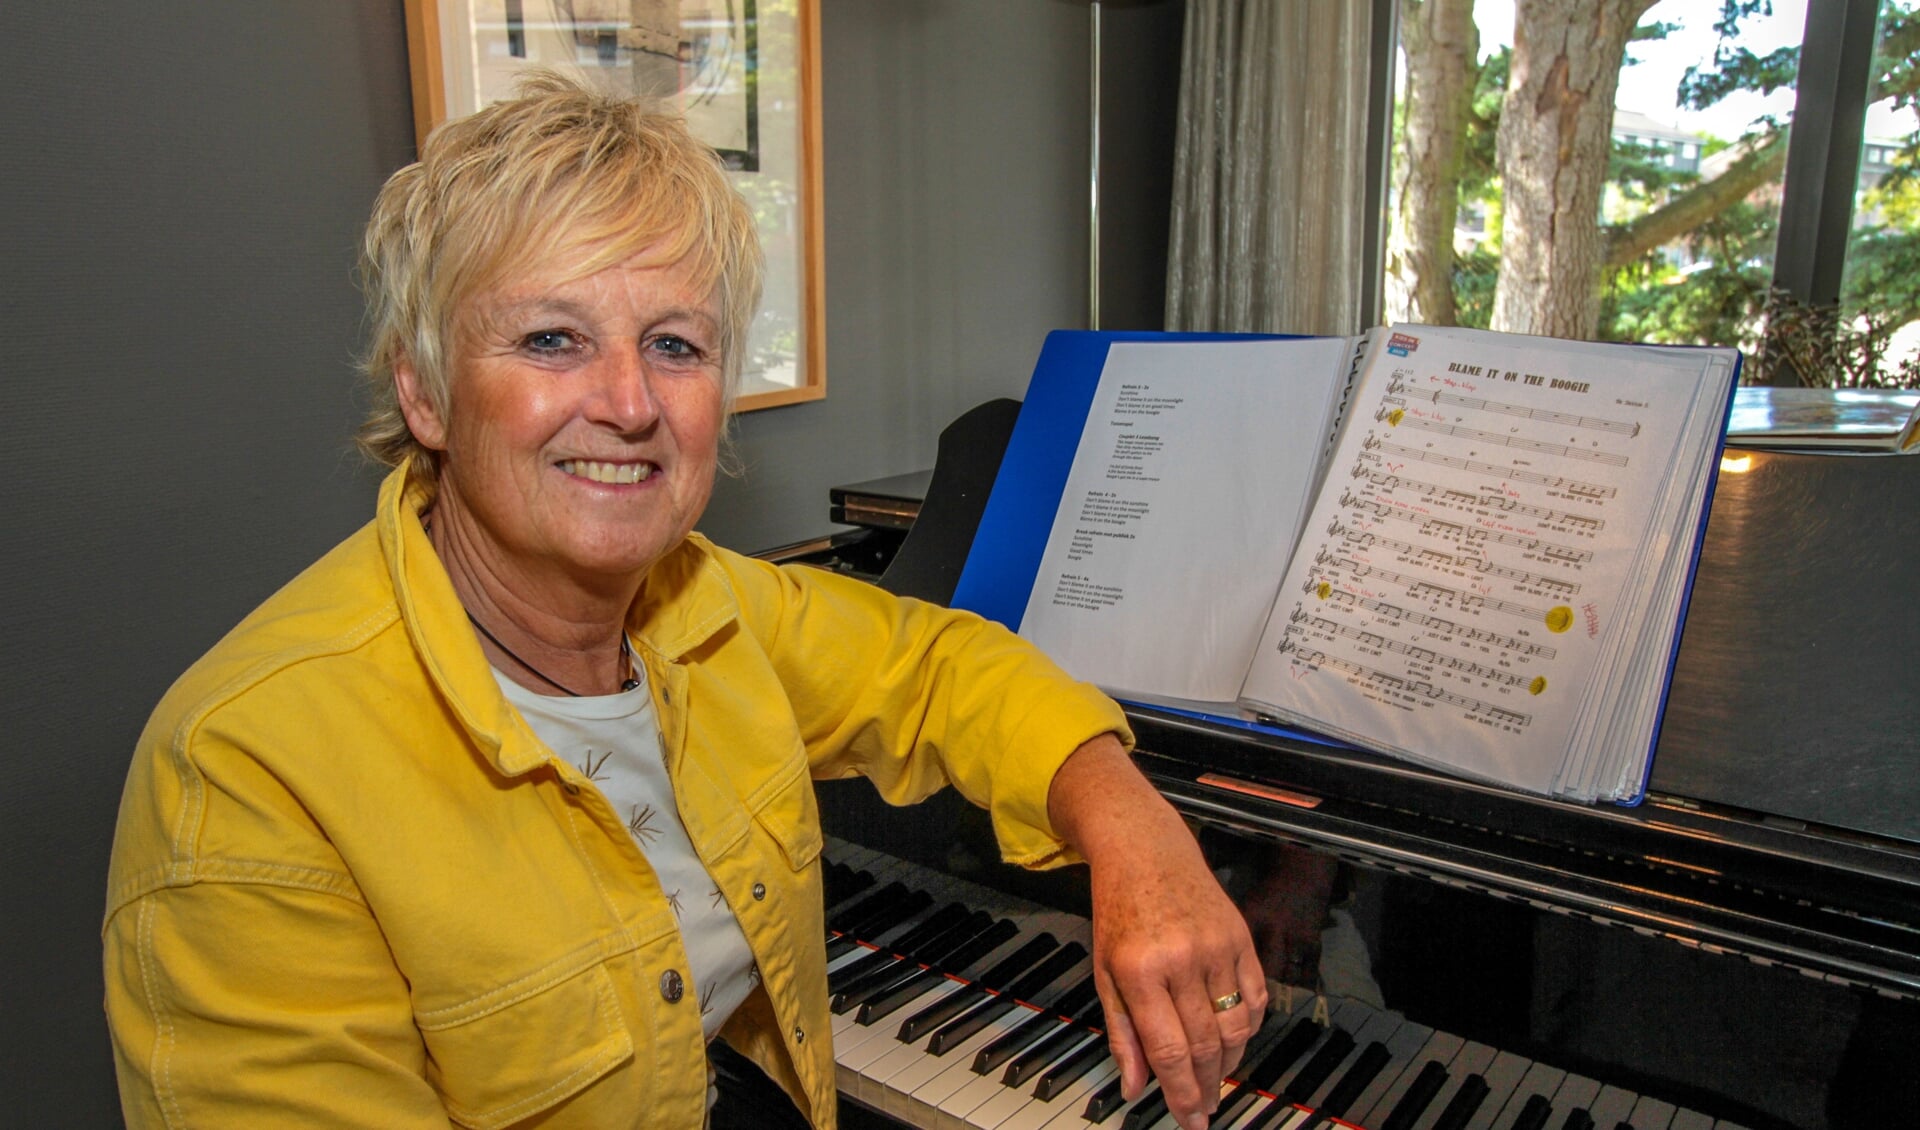 Dirigent Rolien Eikelenboom: "Het is fijn om mensen te verblijden met saamhorigheid. Muziek bindt enorm.” 